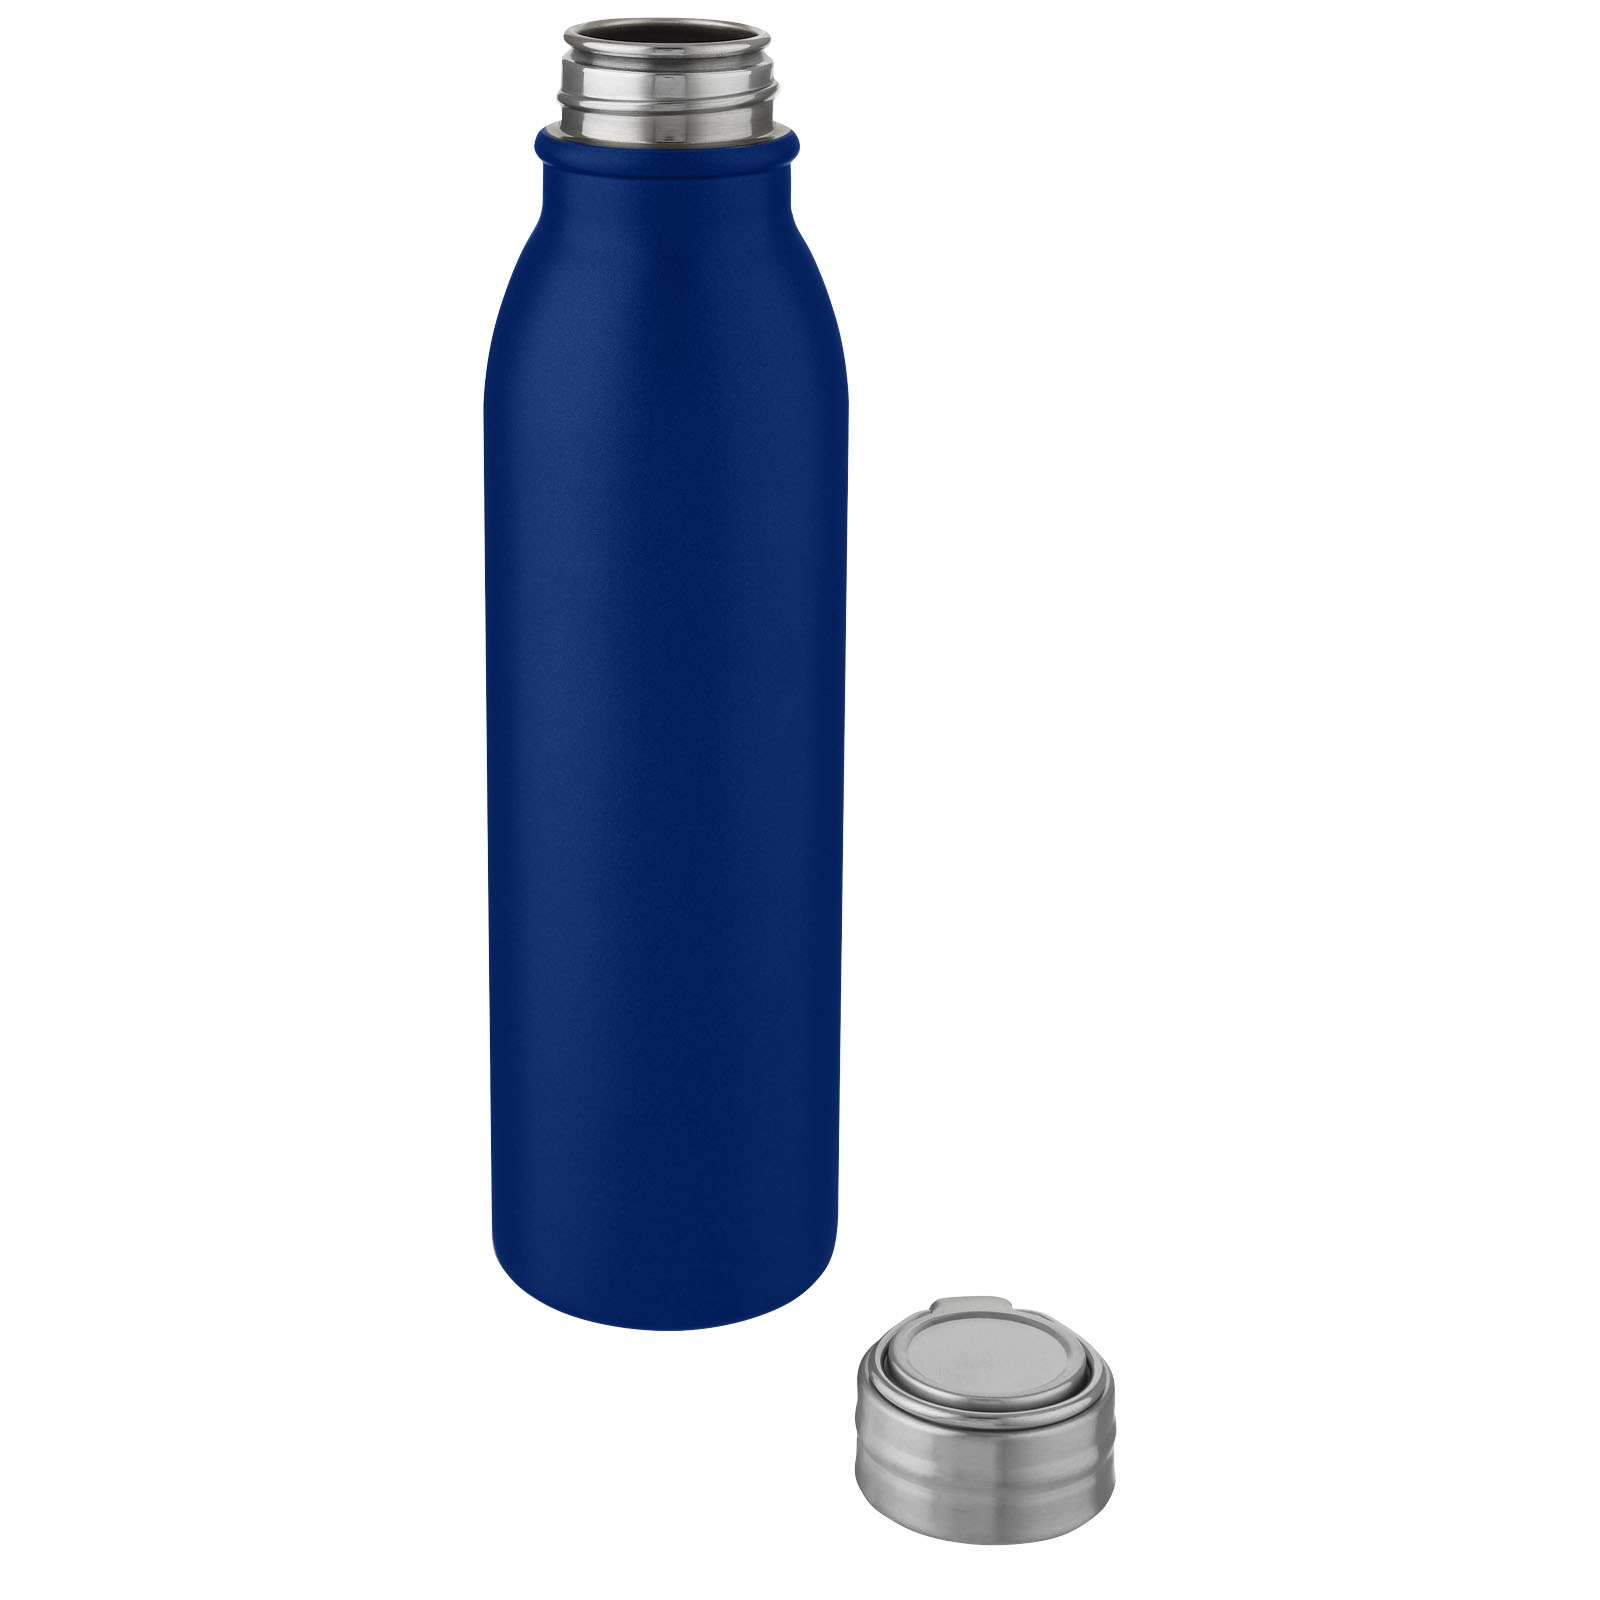 Advertising Water bottles - Harper 700 ml stainless steel water bottle with metal loop - 2